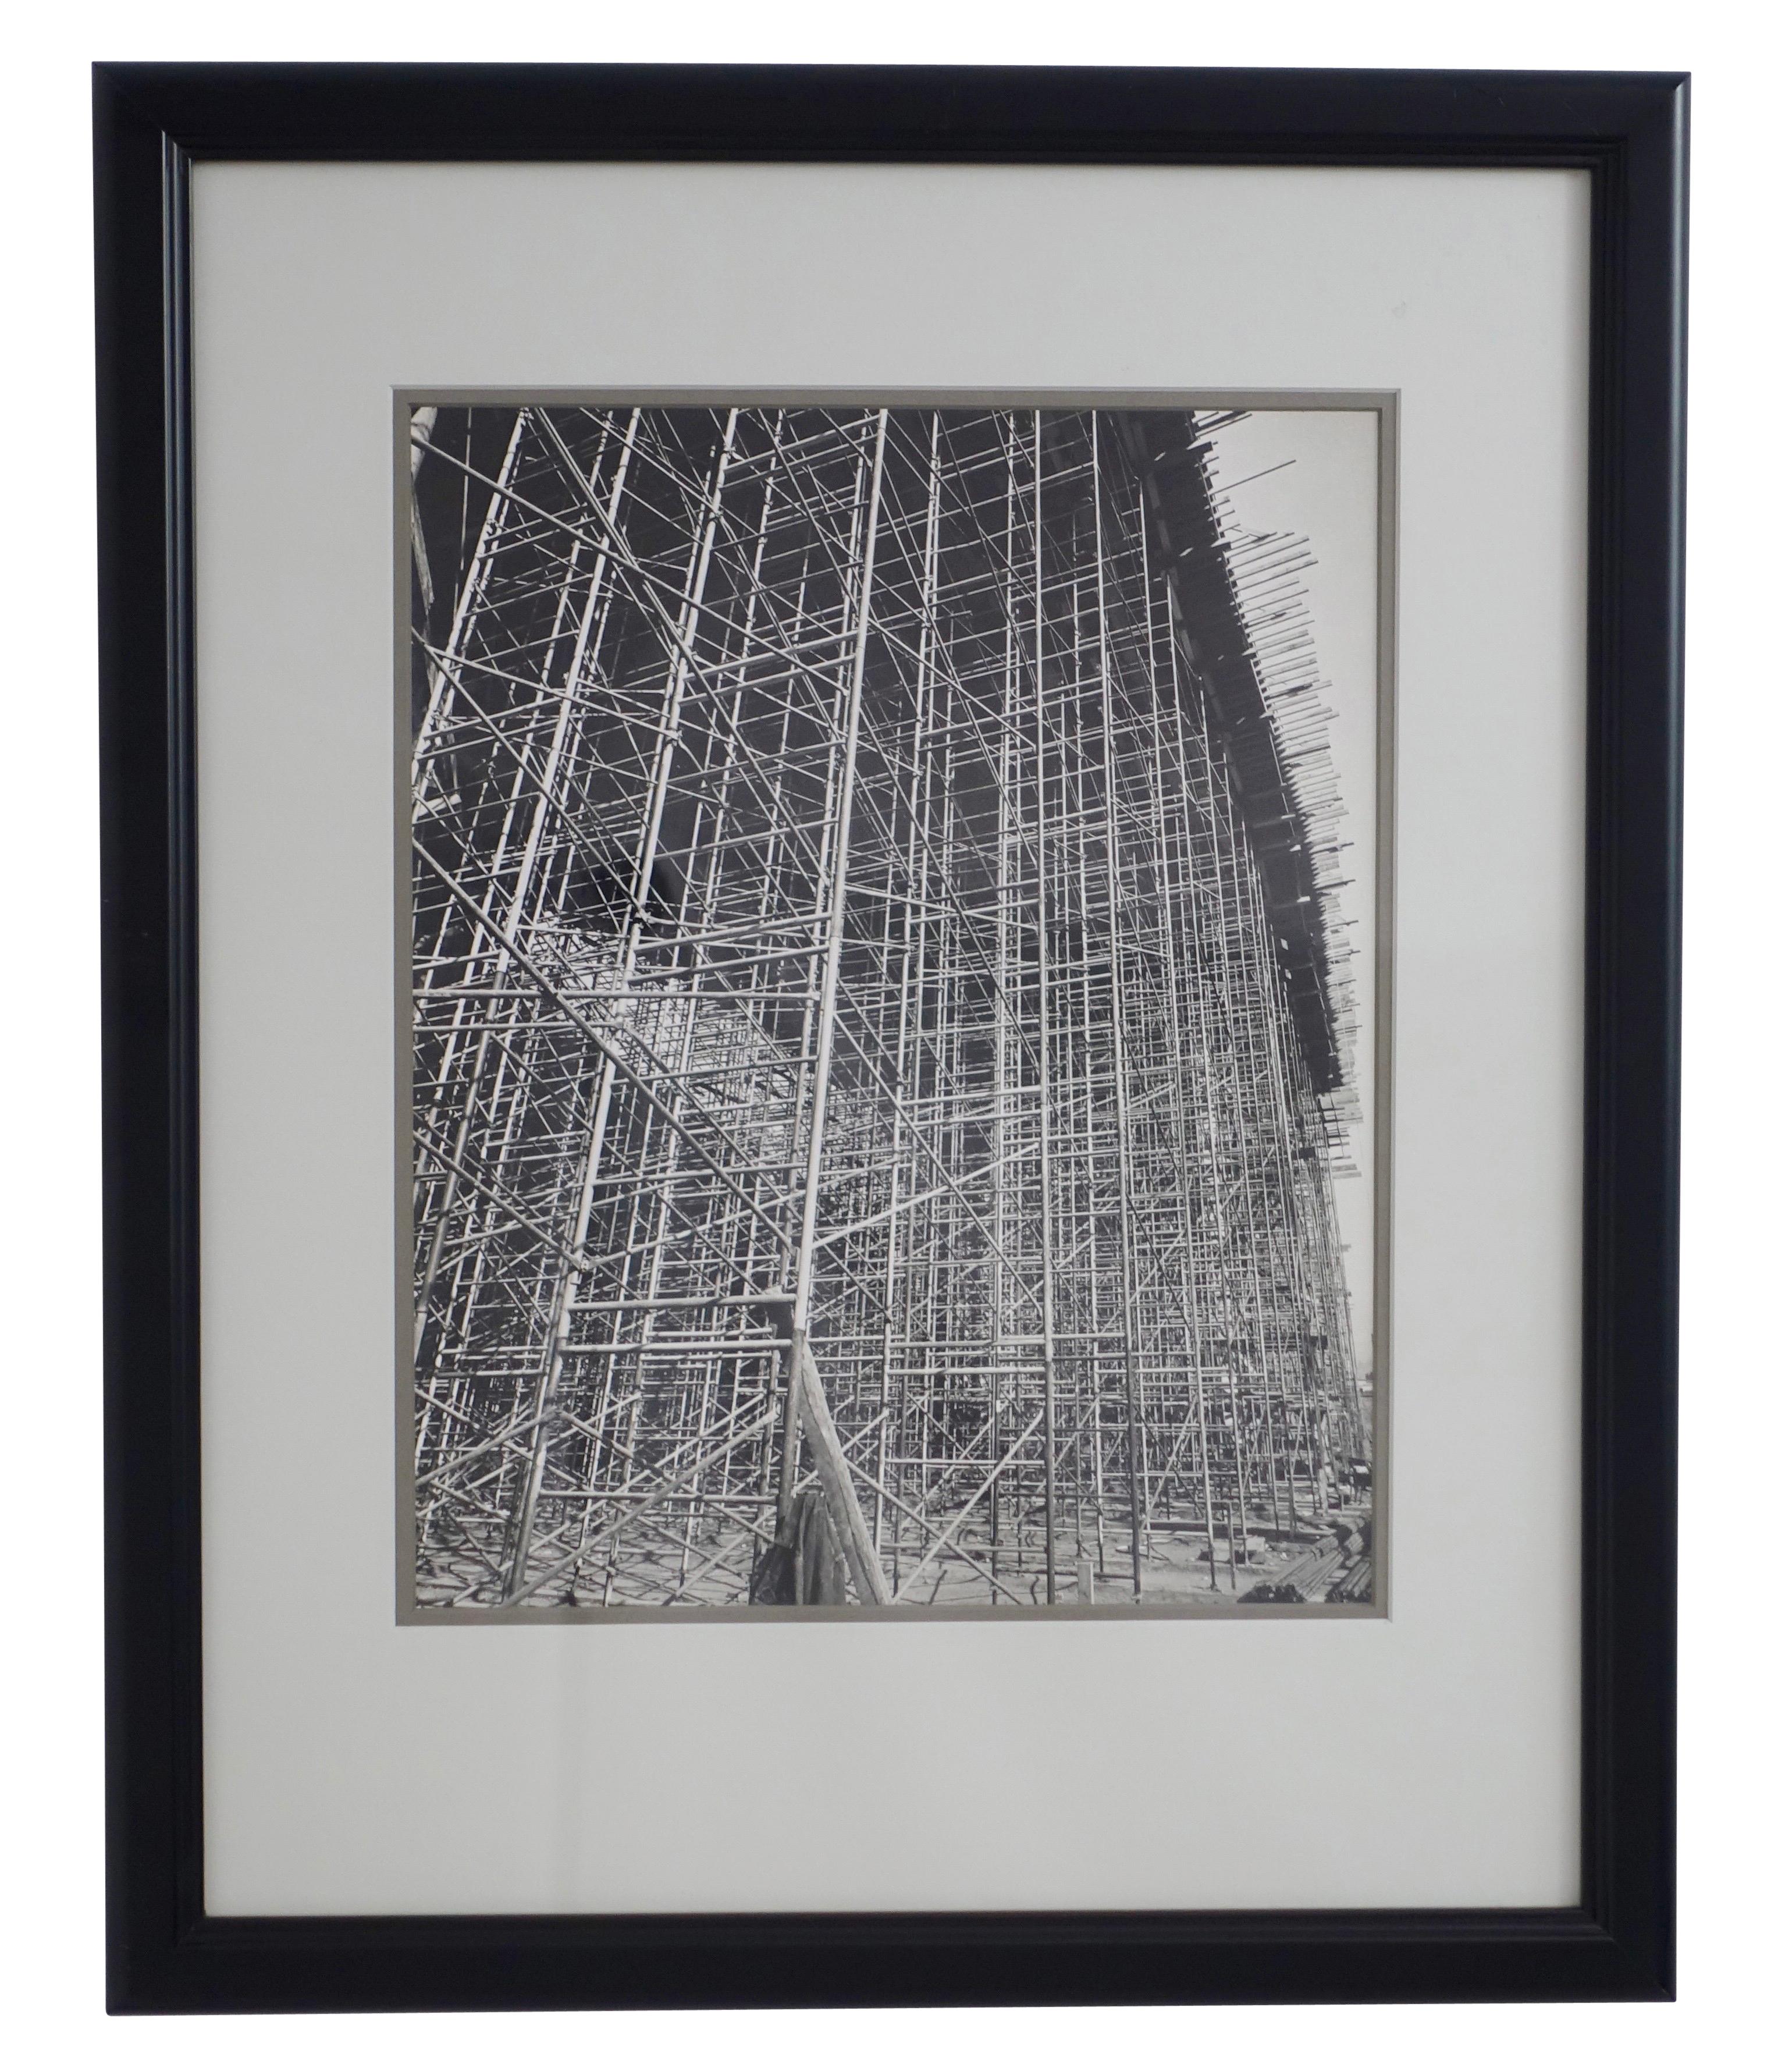 Einzigartiges, nie veröffentlichtes Schwarz-Weiß-Foto eines Baugerüsts einer Industriearchitektur, unsigniert. Professionell mattiert und gerahmt, amerikanisch, Anfang bis Mitte des 20. Jahrhunderts.